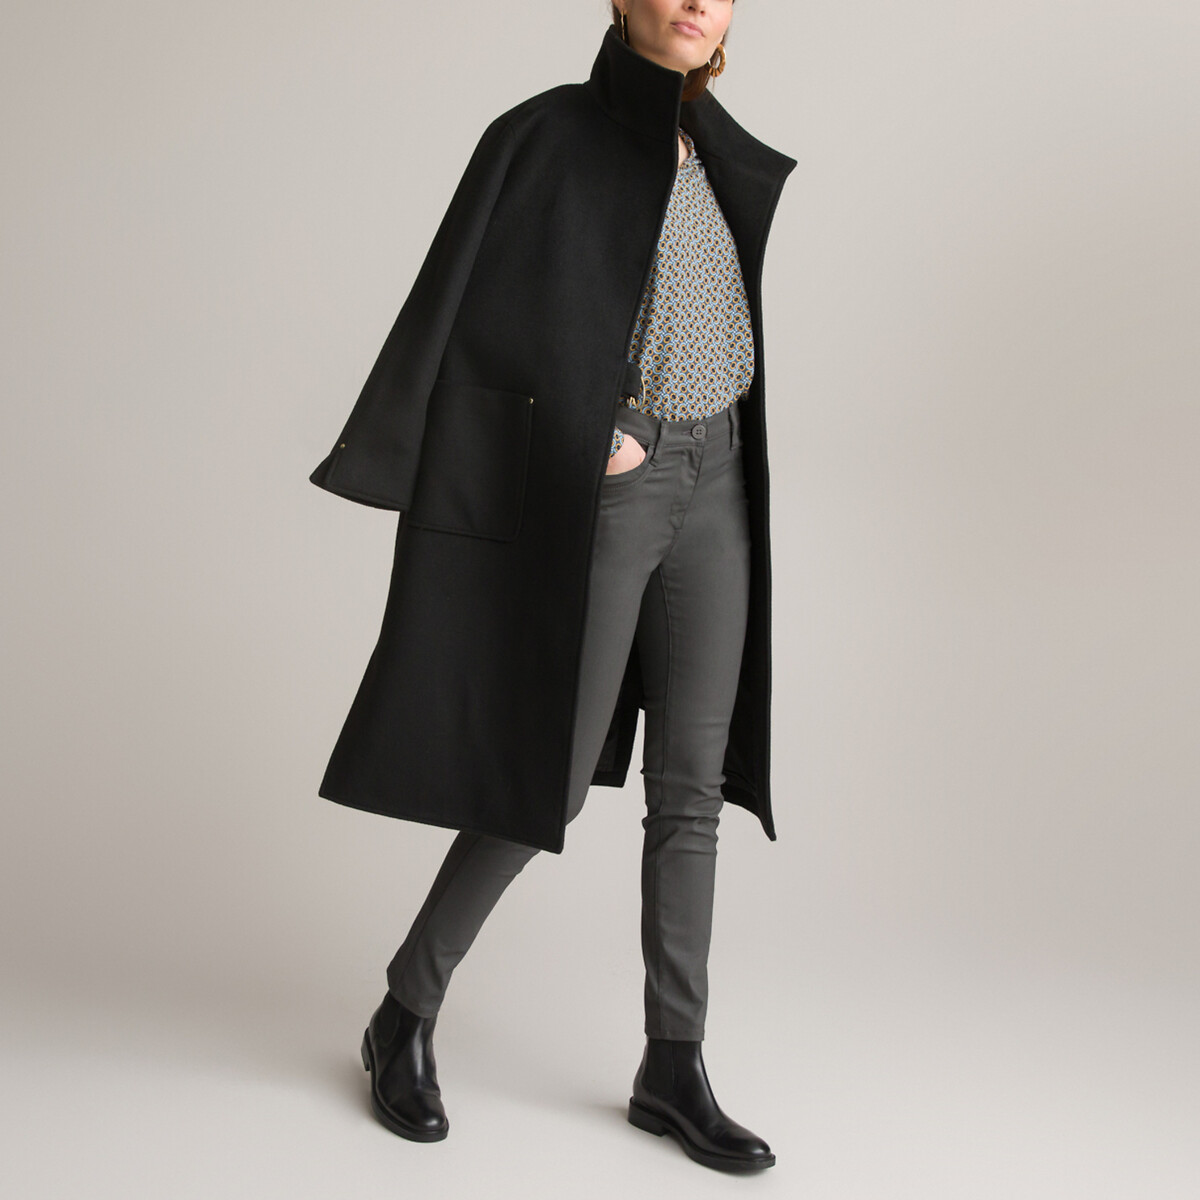 Пальто Длинное асимметричное с завязками 46 (FR) - 52 (RUS) черный LaRedoute, размер 46 (FR) - 52 (RUS) Пальто Длинное асимметричное с завязками 46 (FR) - 52 (RUS) черный - фото 2